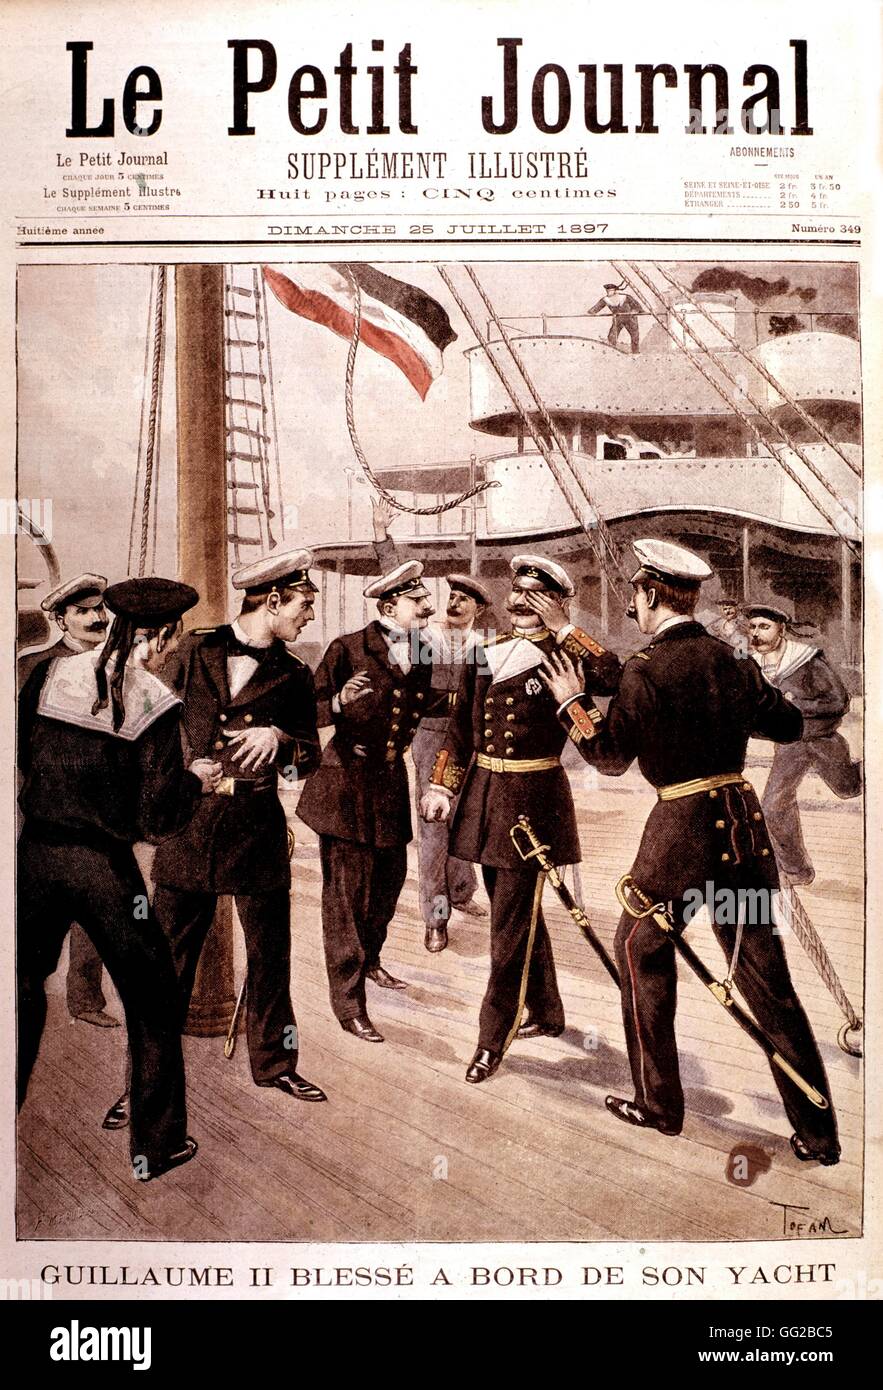 Guillaume II, empereur d'Allemagne, blessé à bord de son yacht Germania 1897 Foto Stock